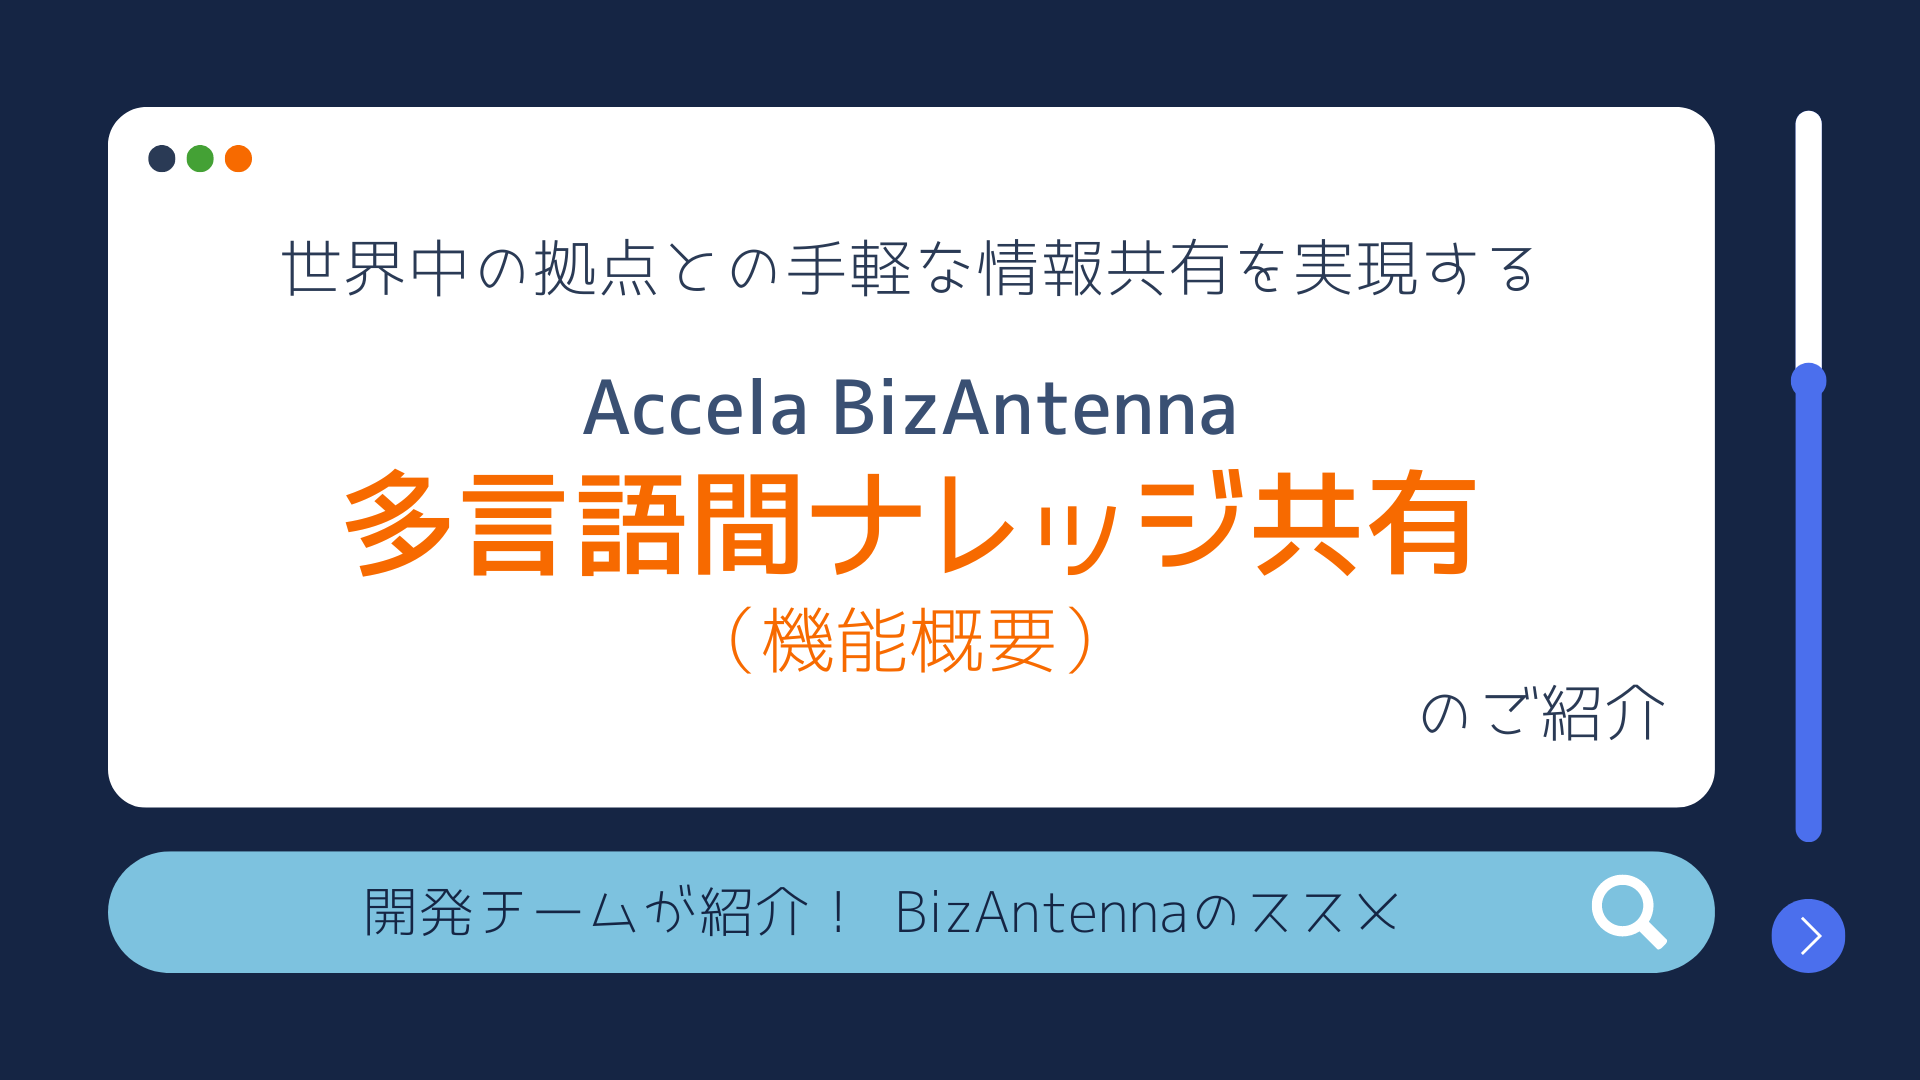 世界中の拠点との手軽な情報共有を実現する「Accela BizAntenna 多言語間ナレッジ共有」のご紹介